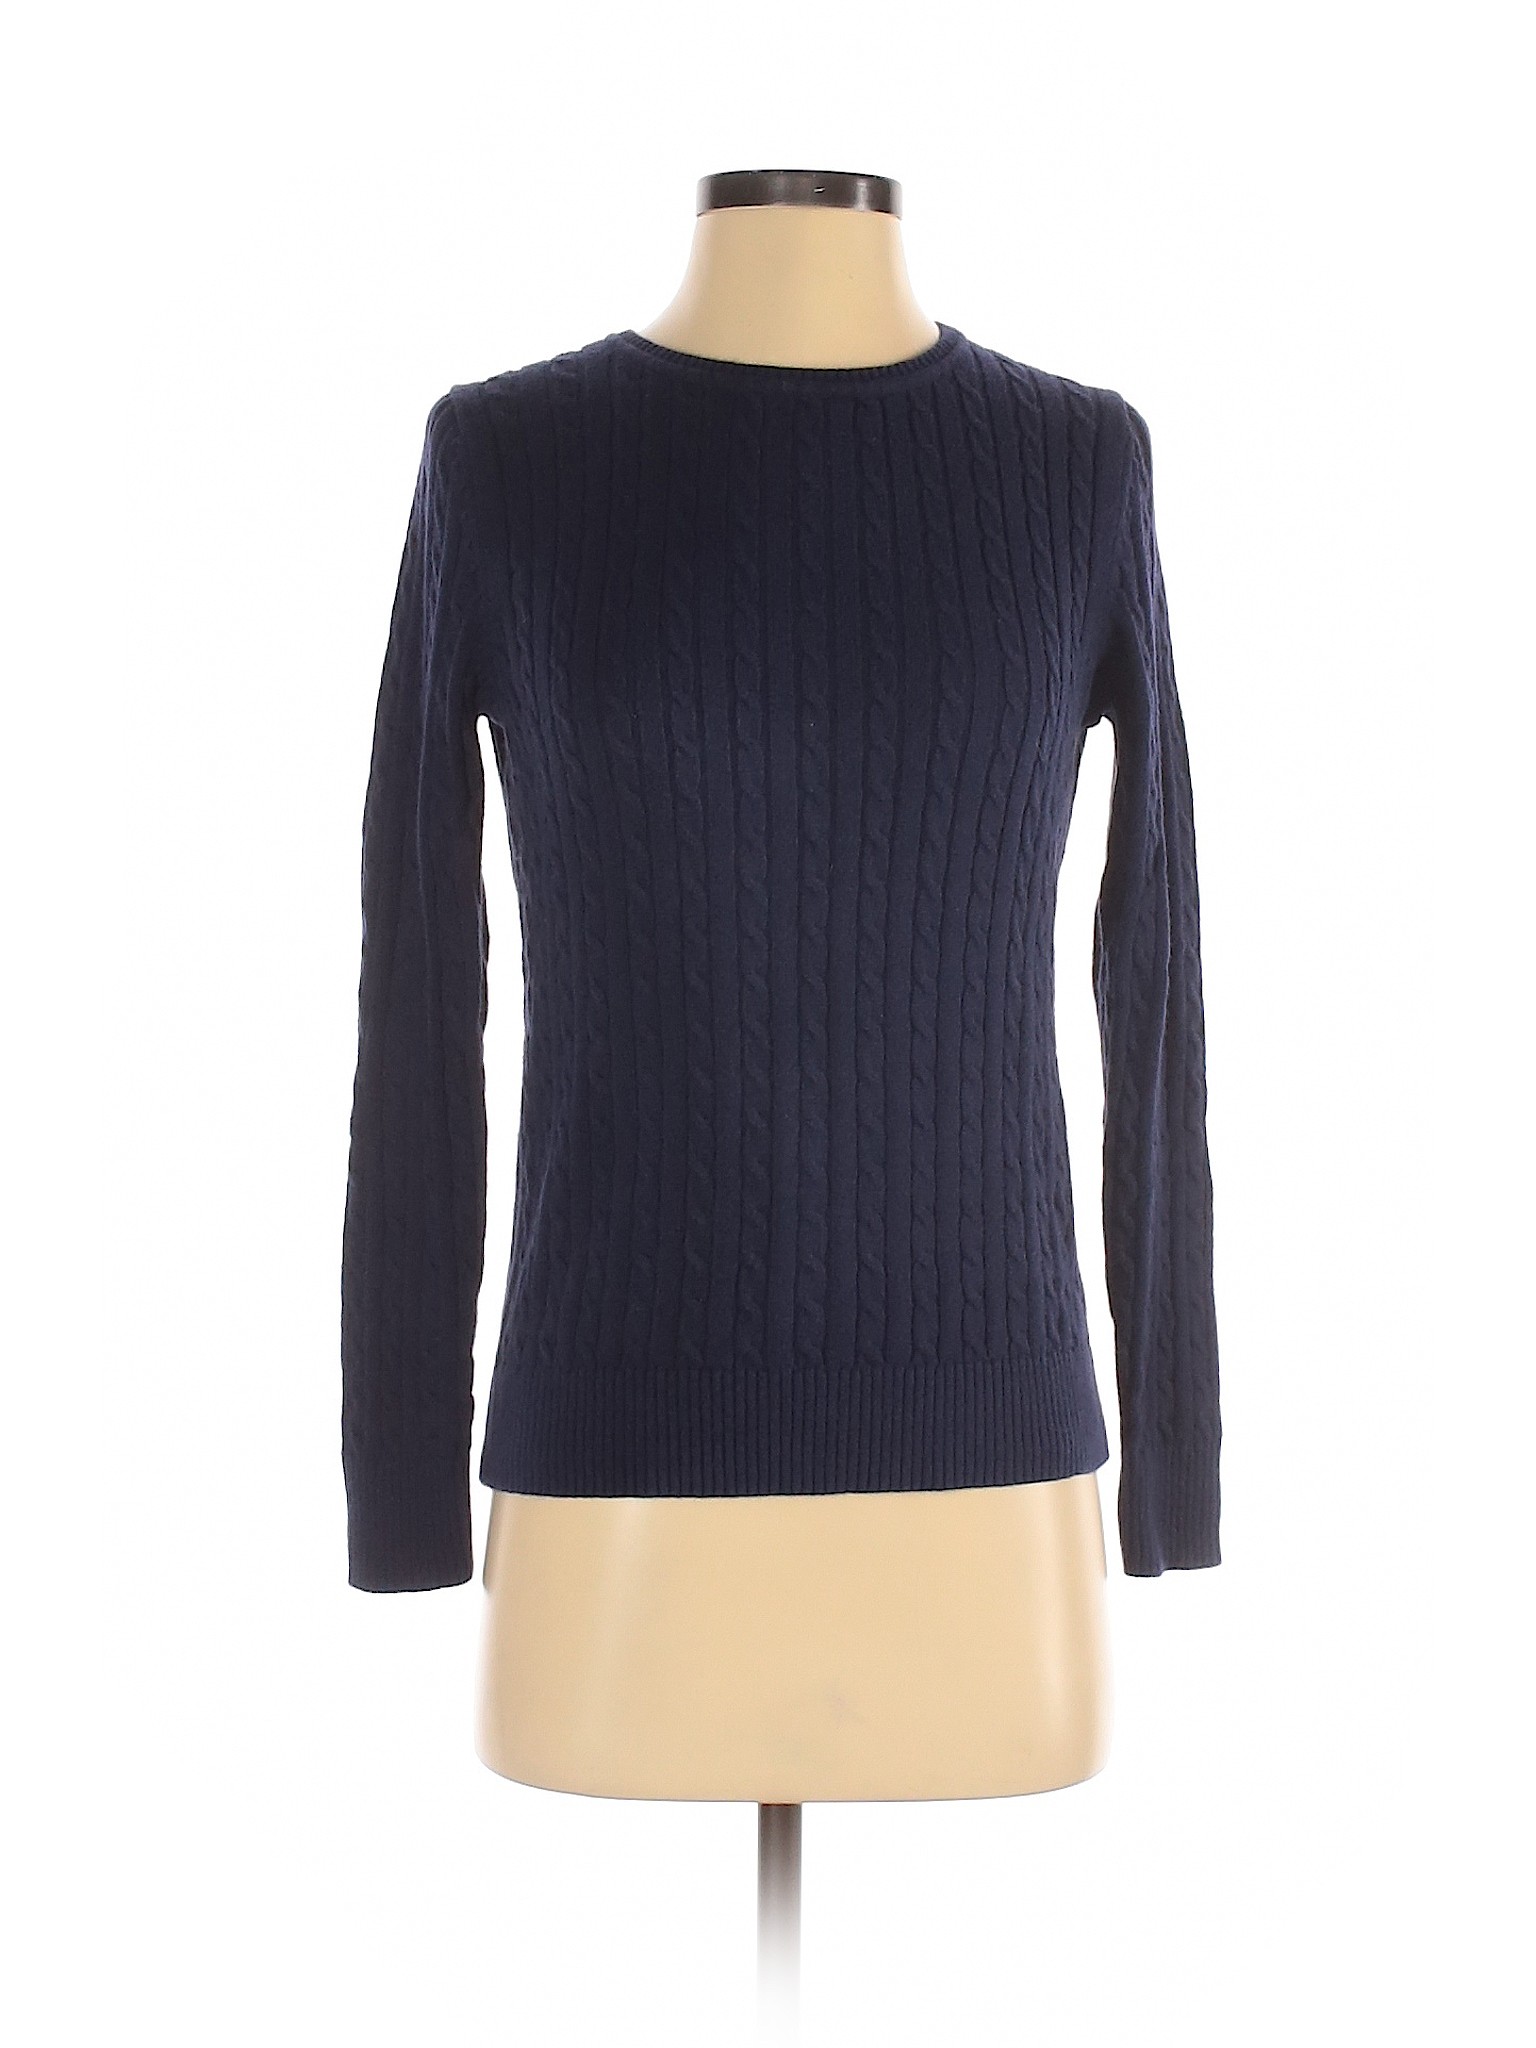 IZOD Women Blue Pullover Sweater S | eBay